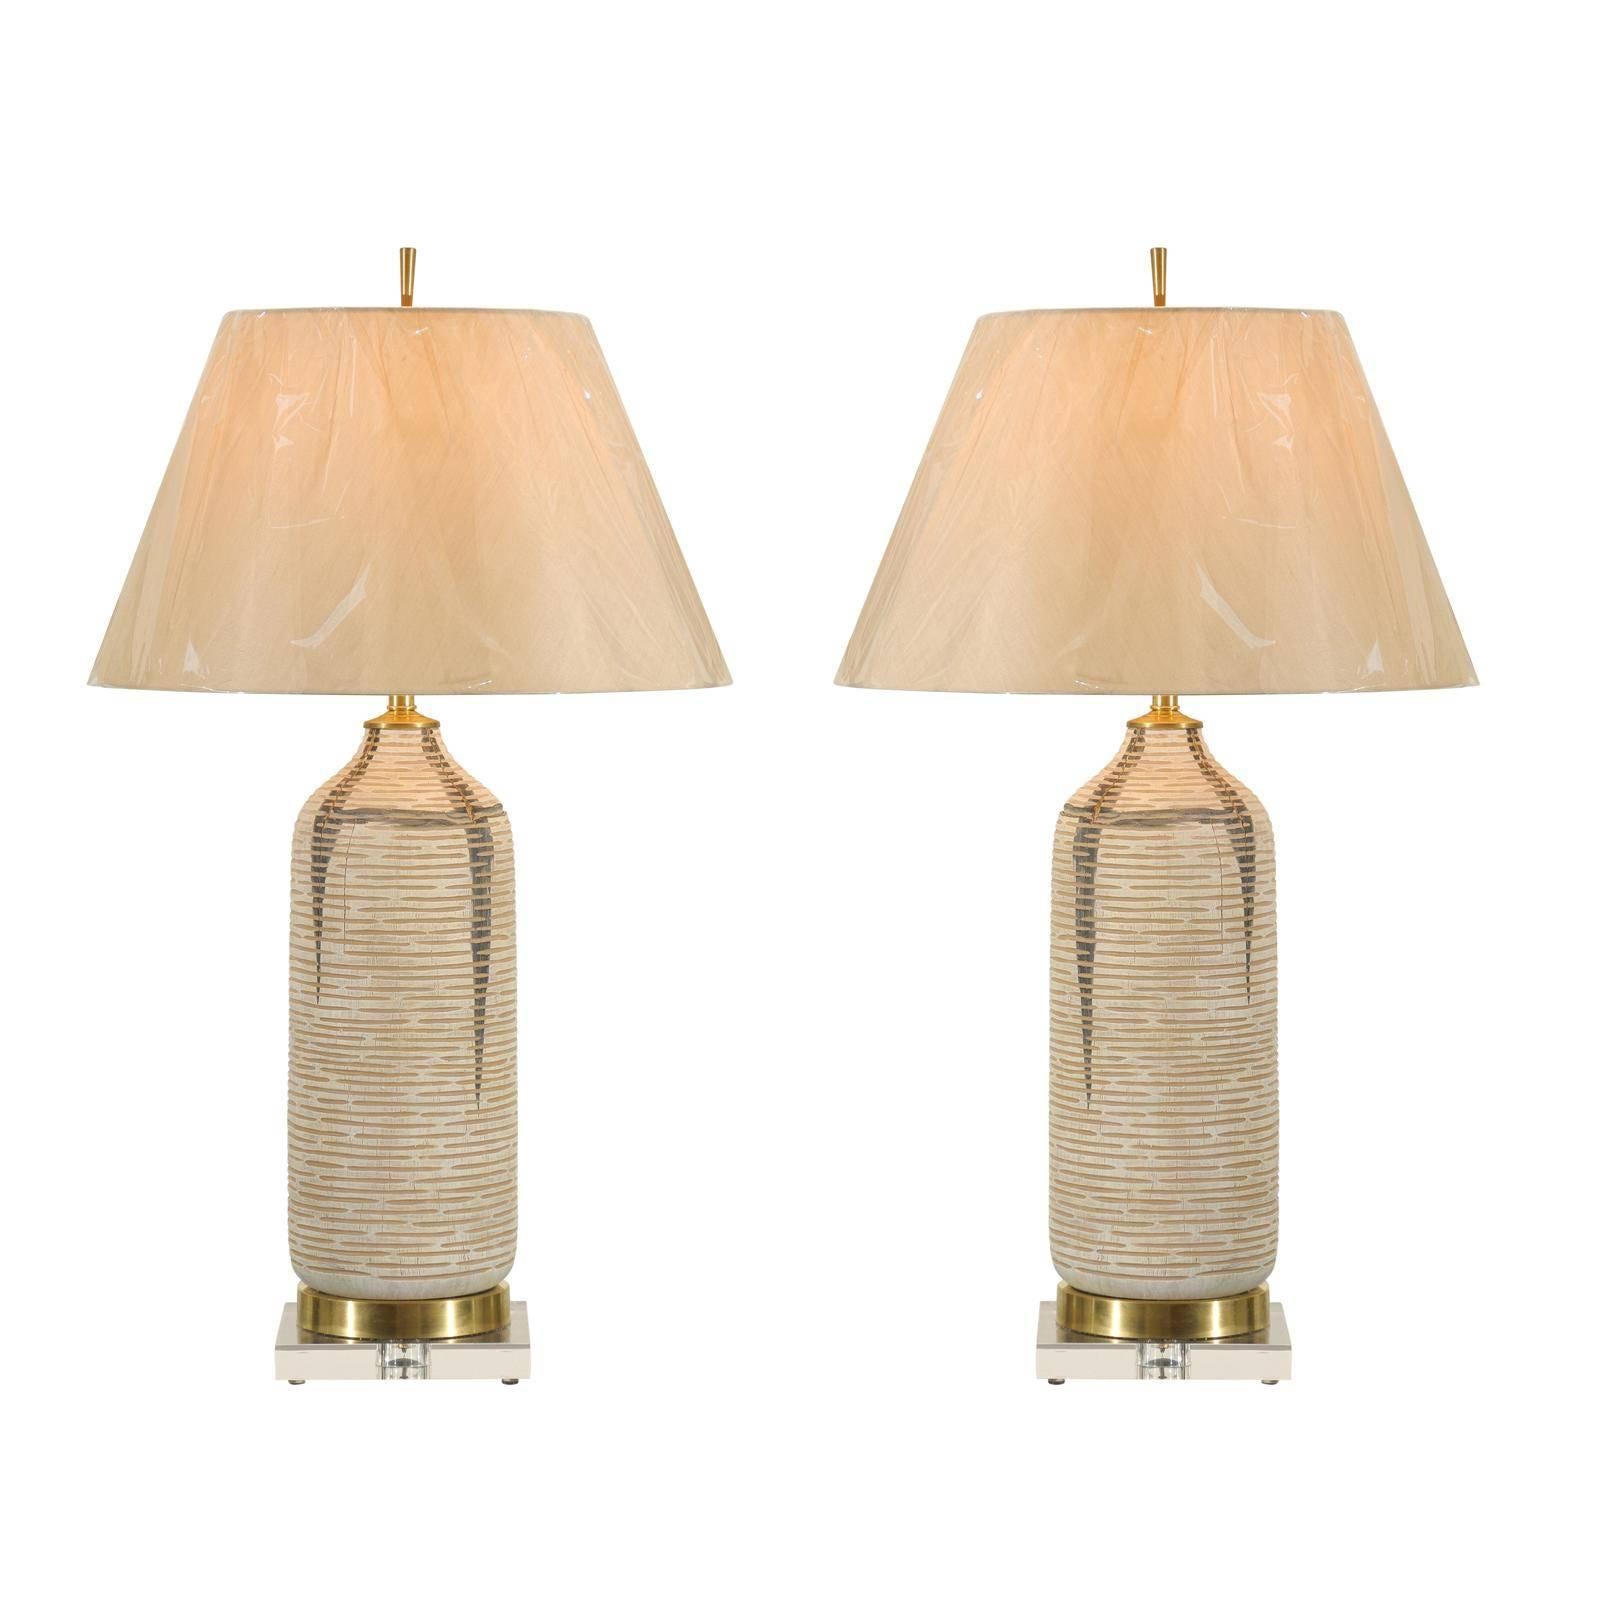 Ein schönes Paar Vintage-Gefäße aus gekälktem Holz als maßgefertigte Lampen